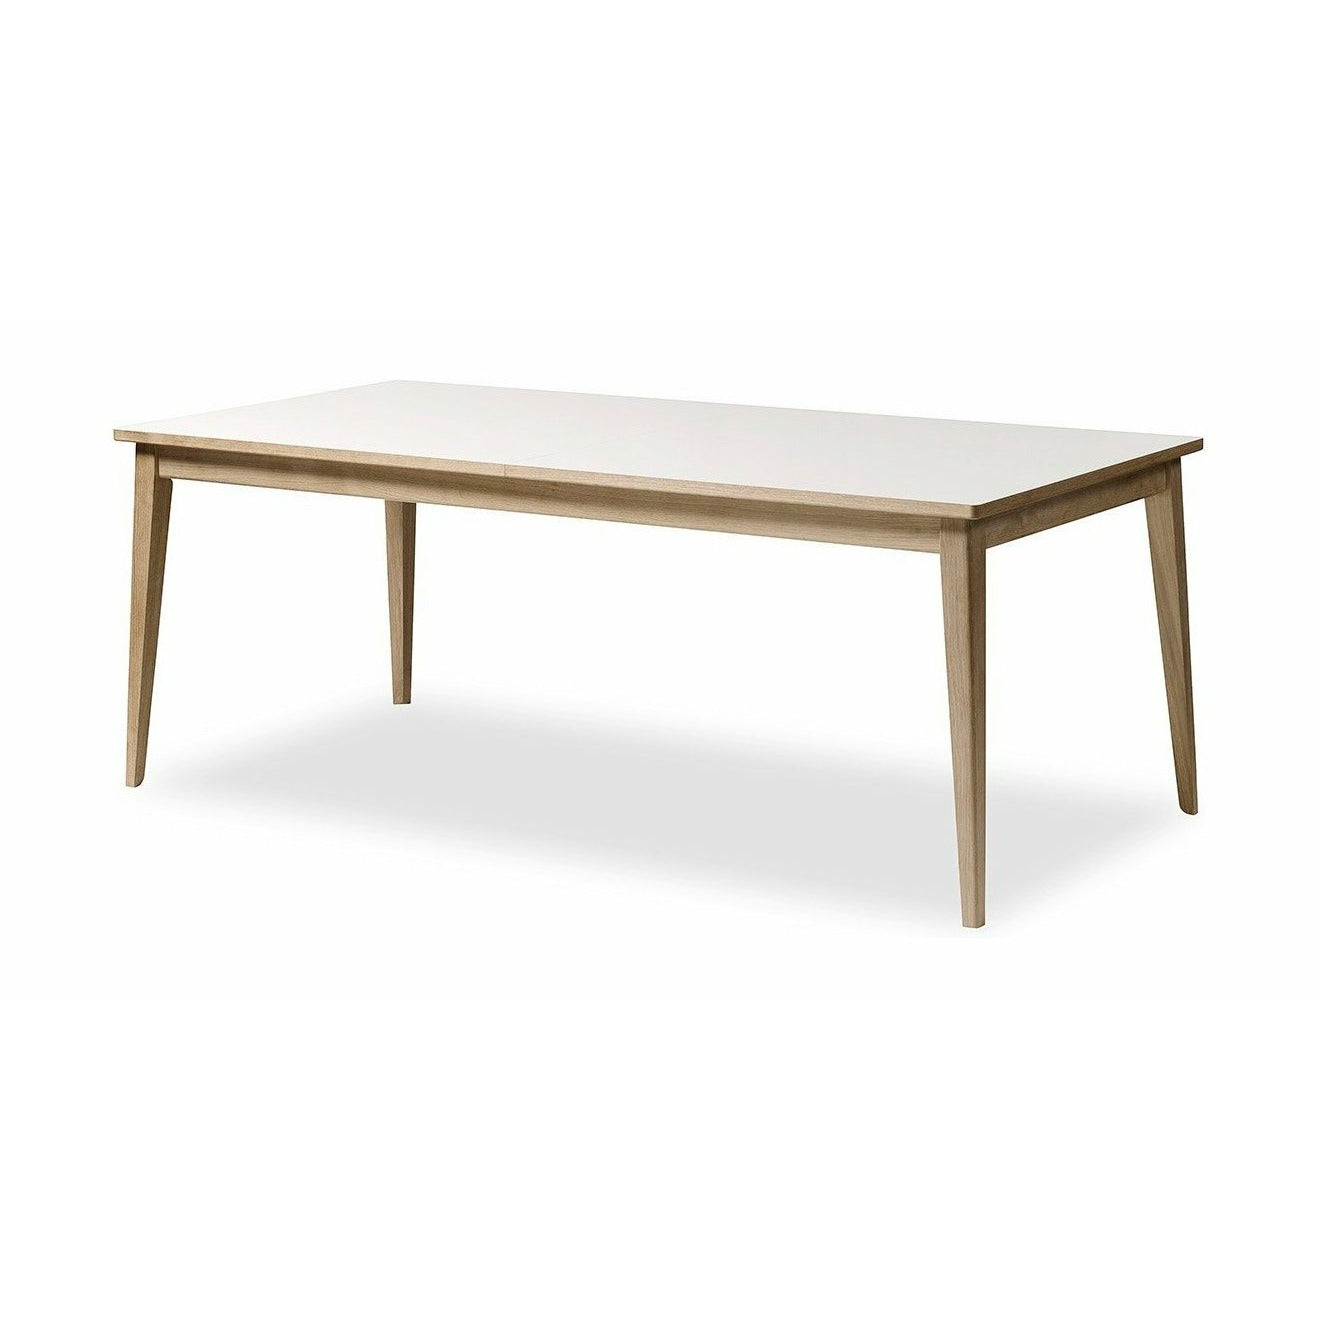 Andersen Furniture T3 Mesa extensible Laminado blanco, roble en jabón, 200 cm